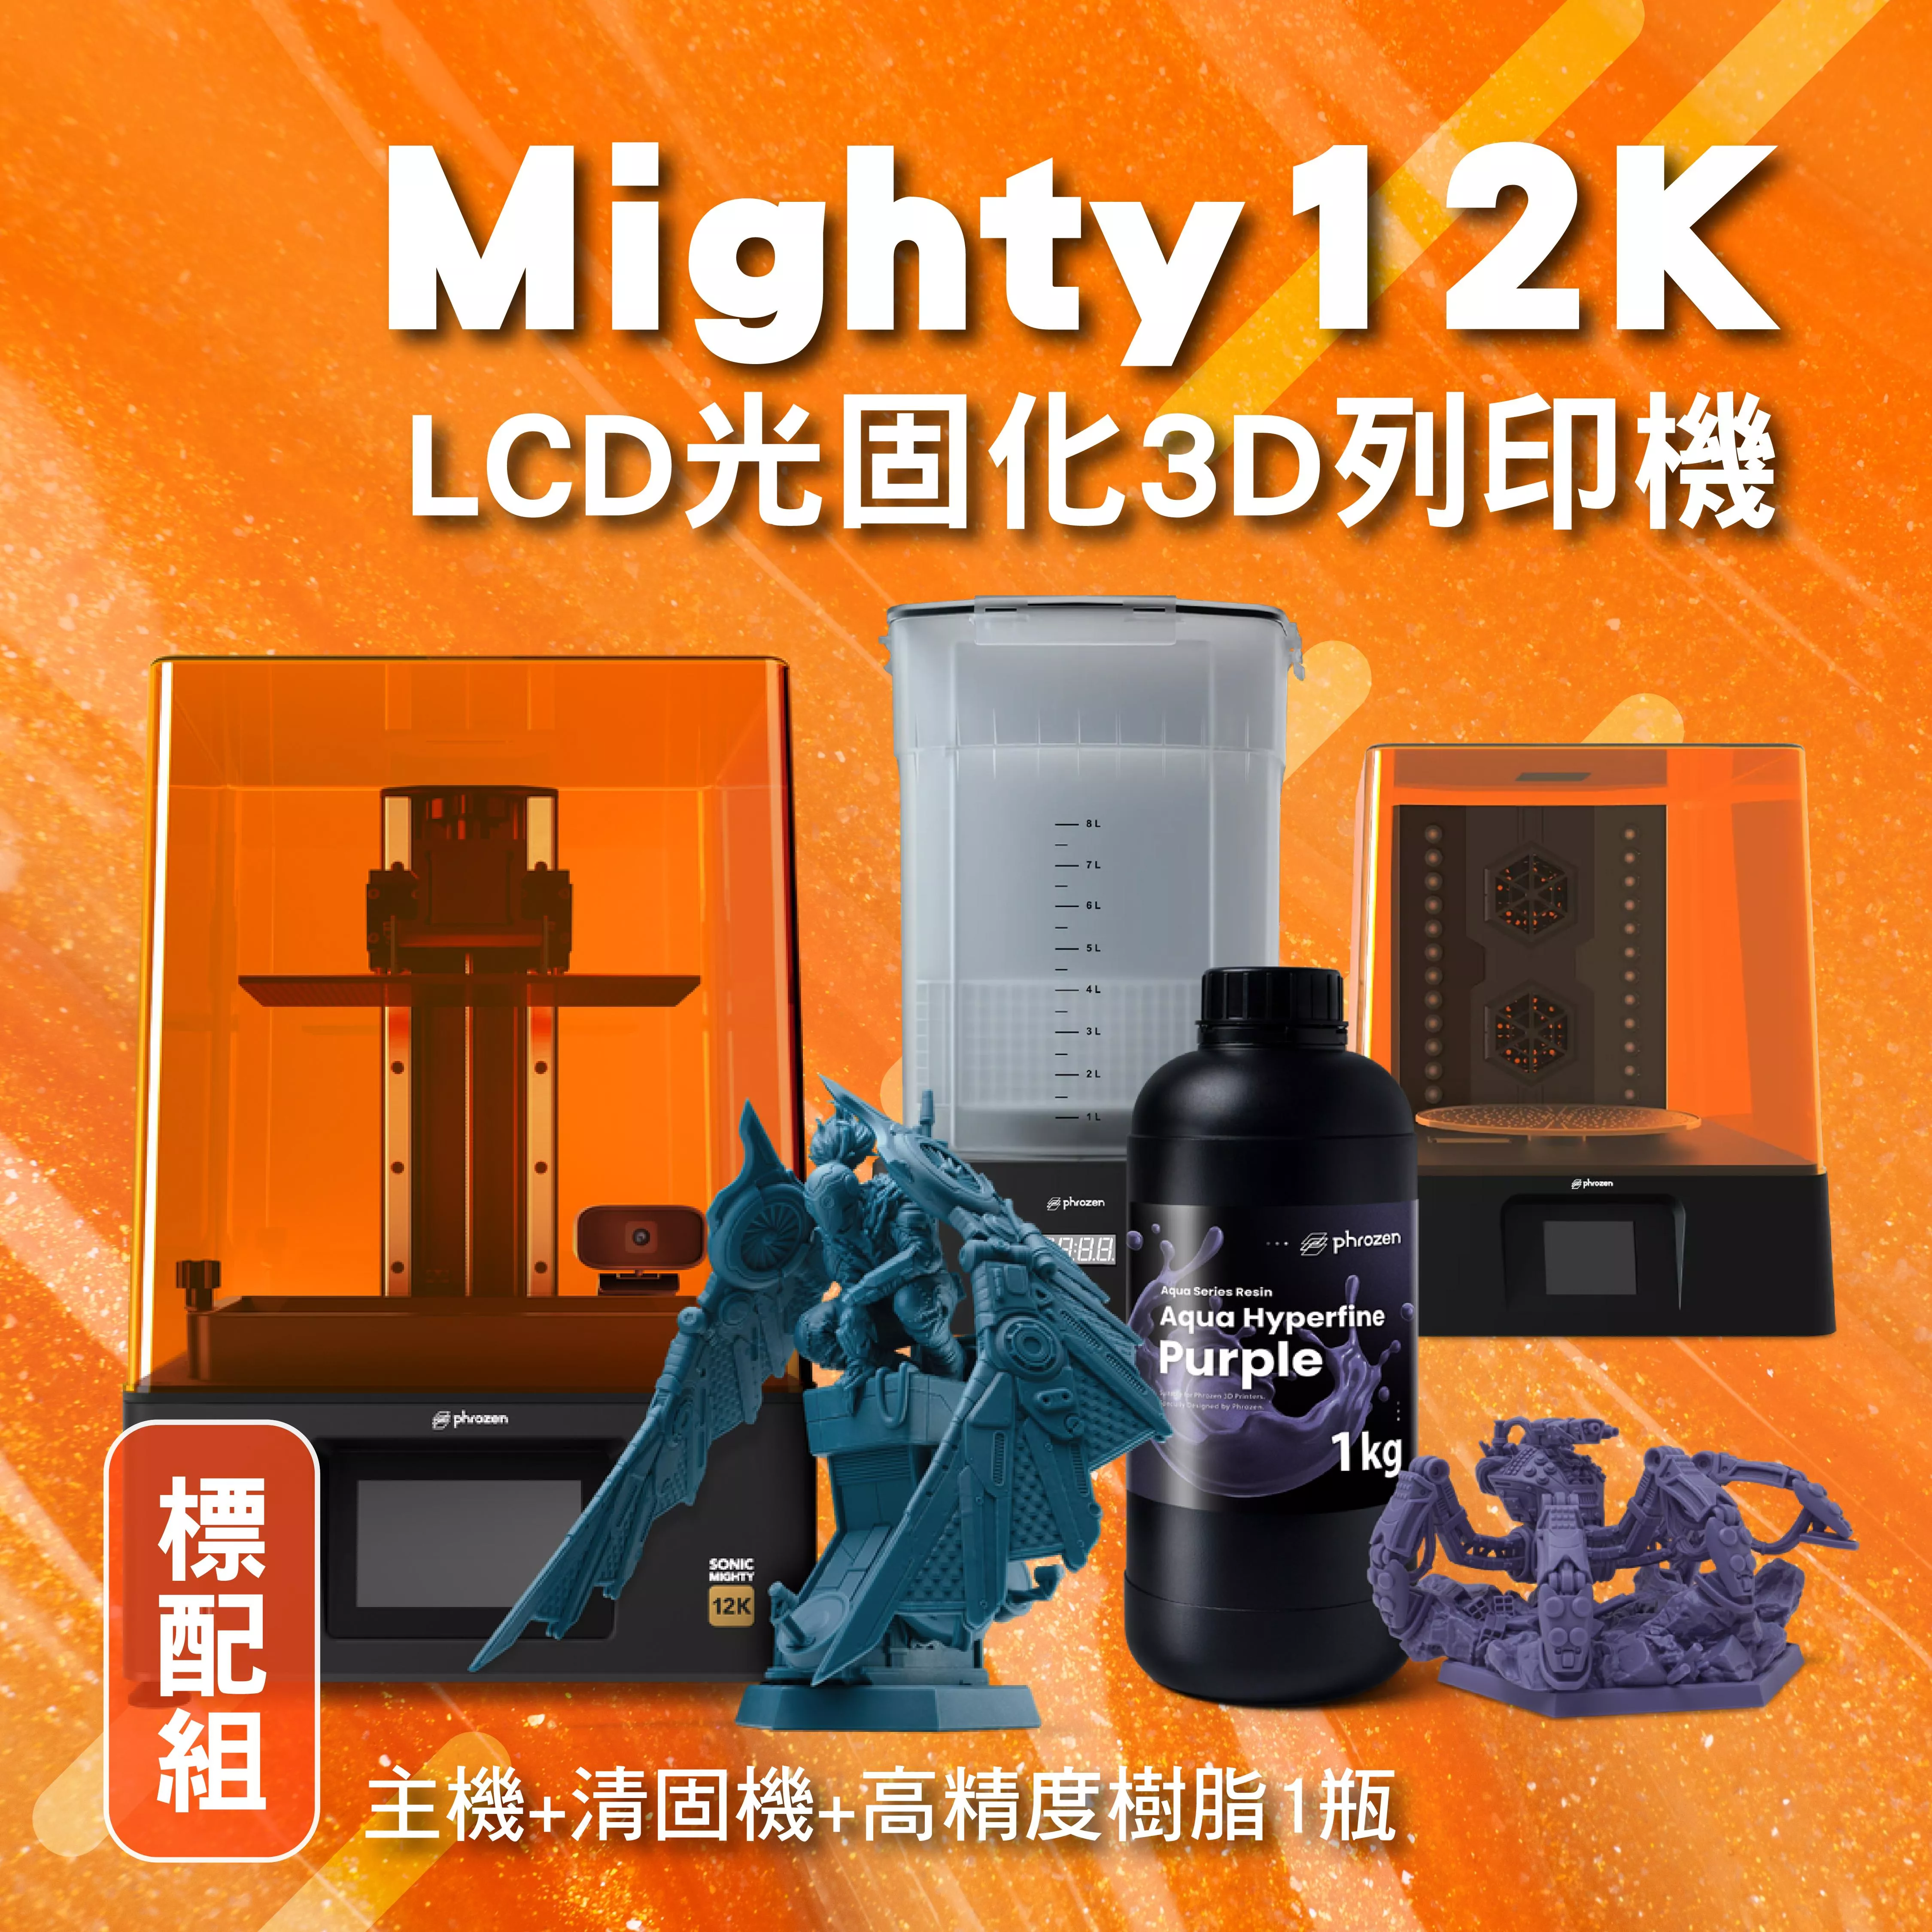 Mighty 12k 標配組 (主機+清固機+高精度樹脂1瓶)